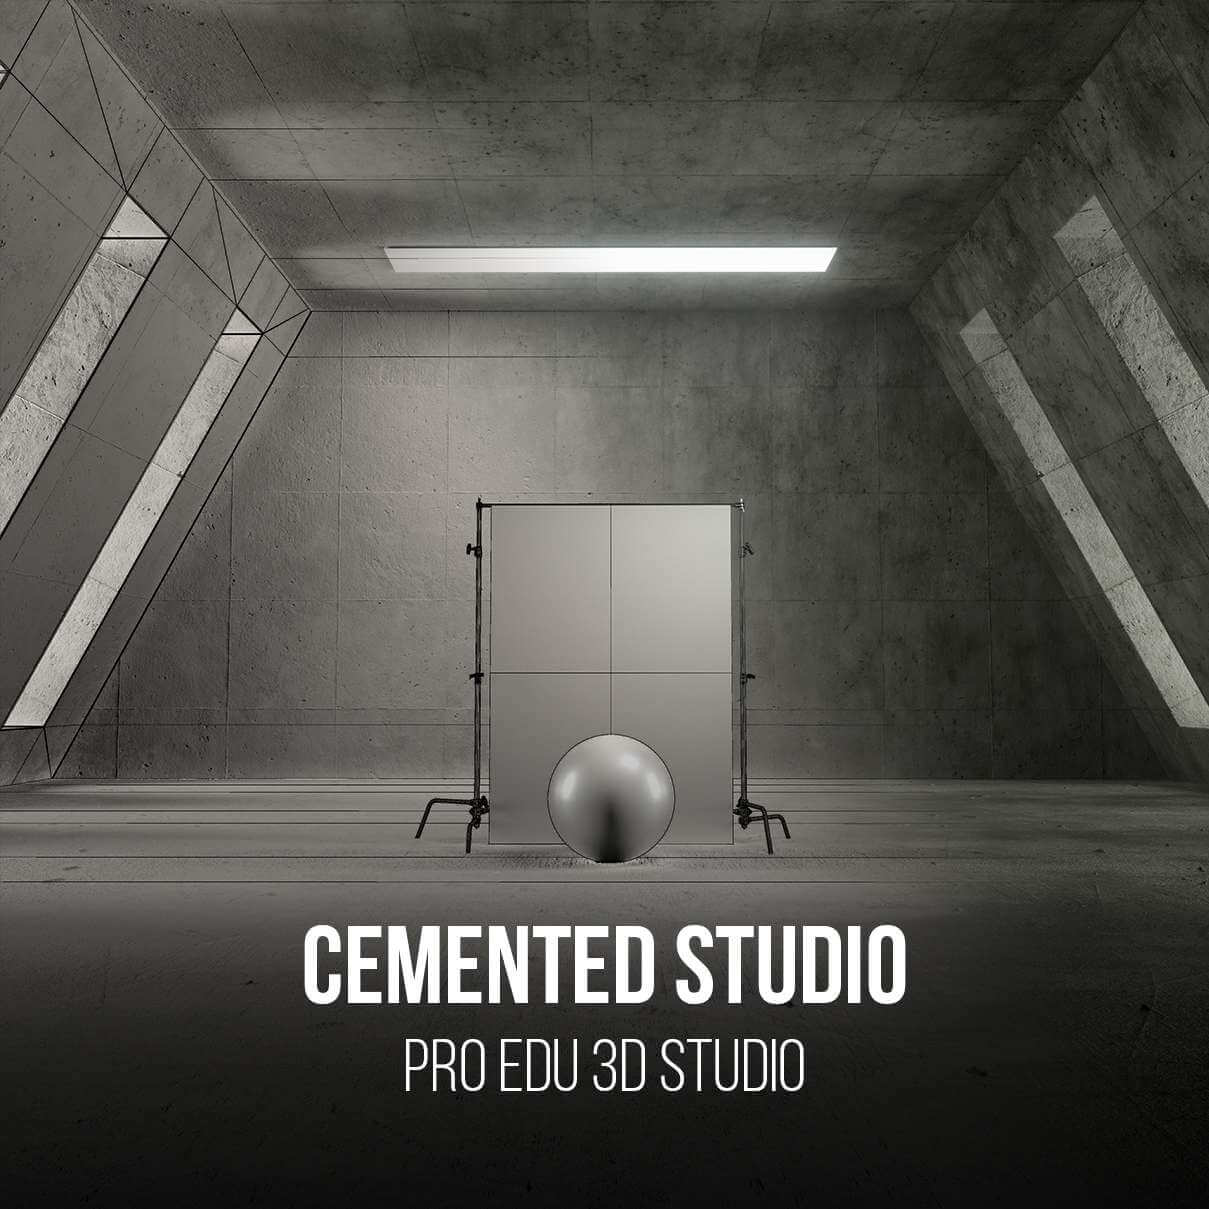 Cement Photography Studio 3D Model for Photoshop - PRO EDU